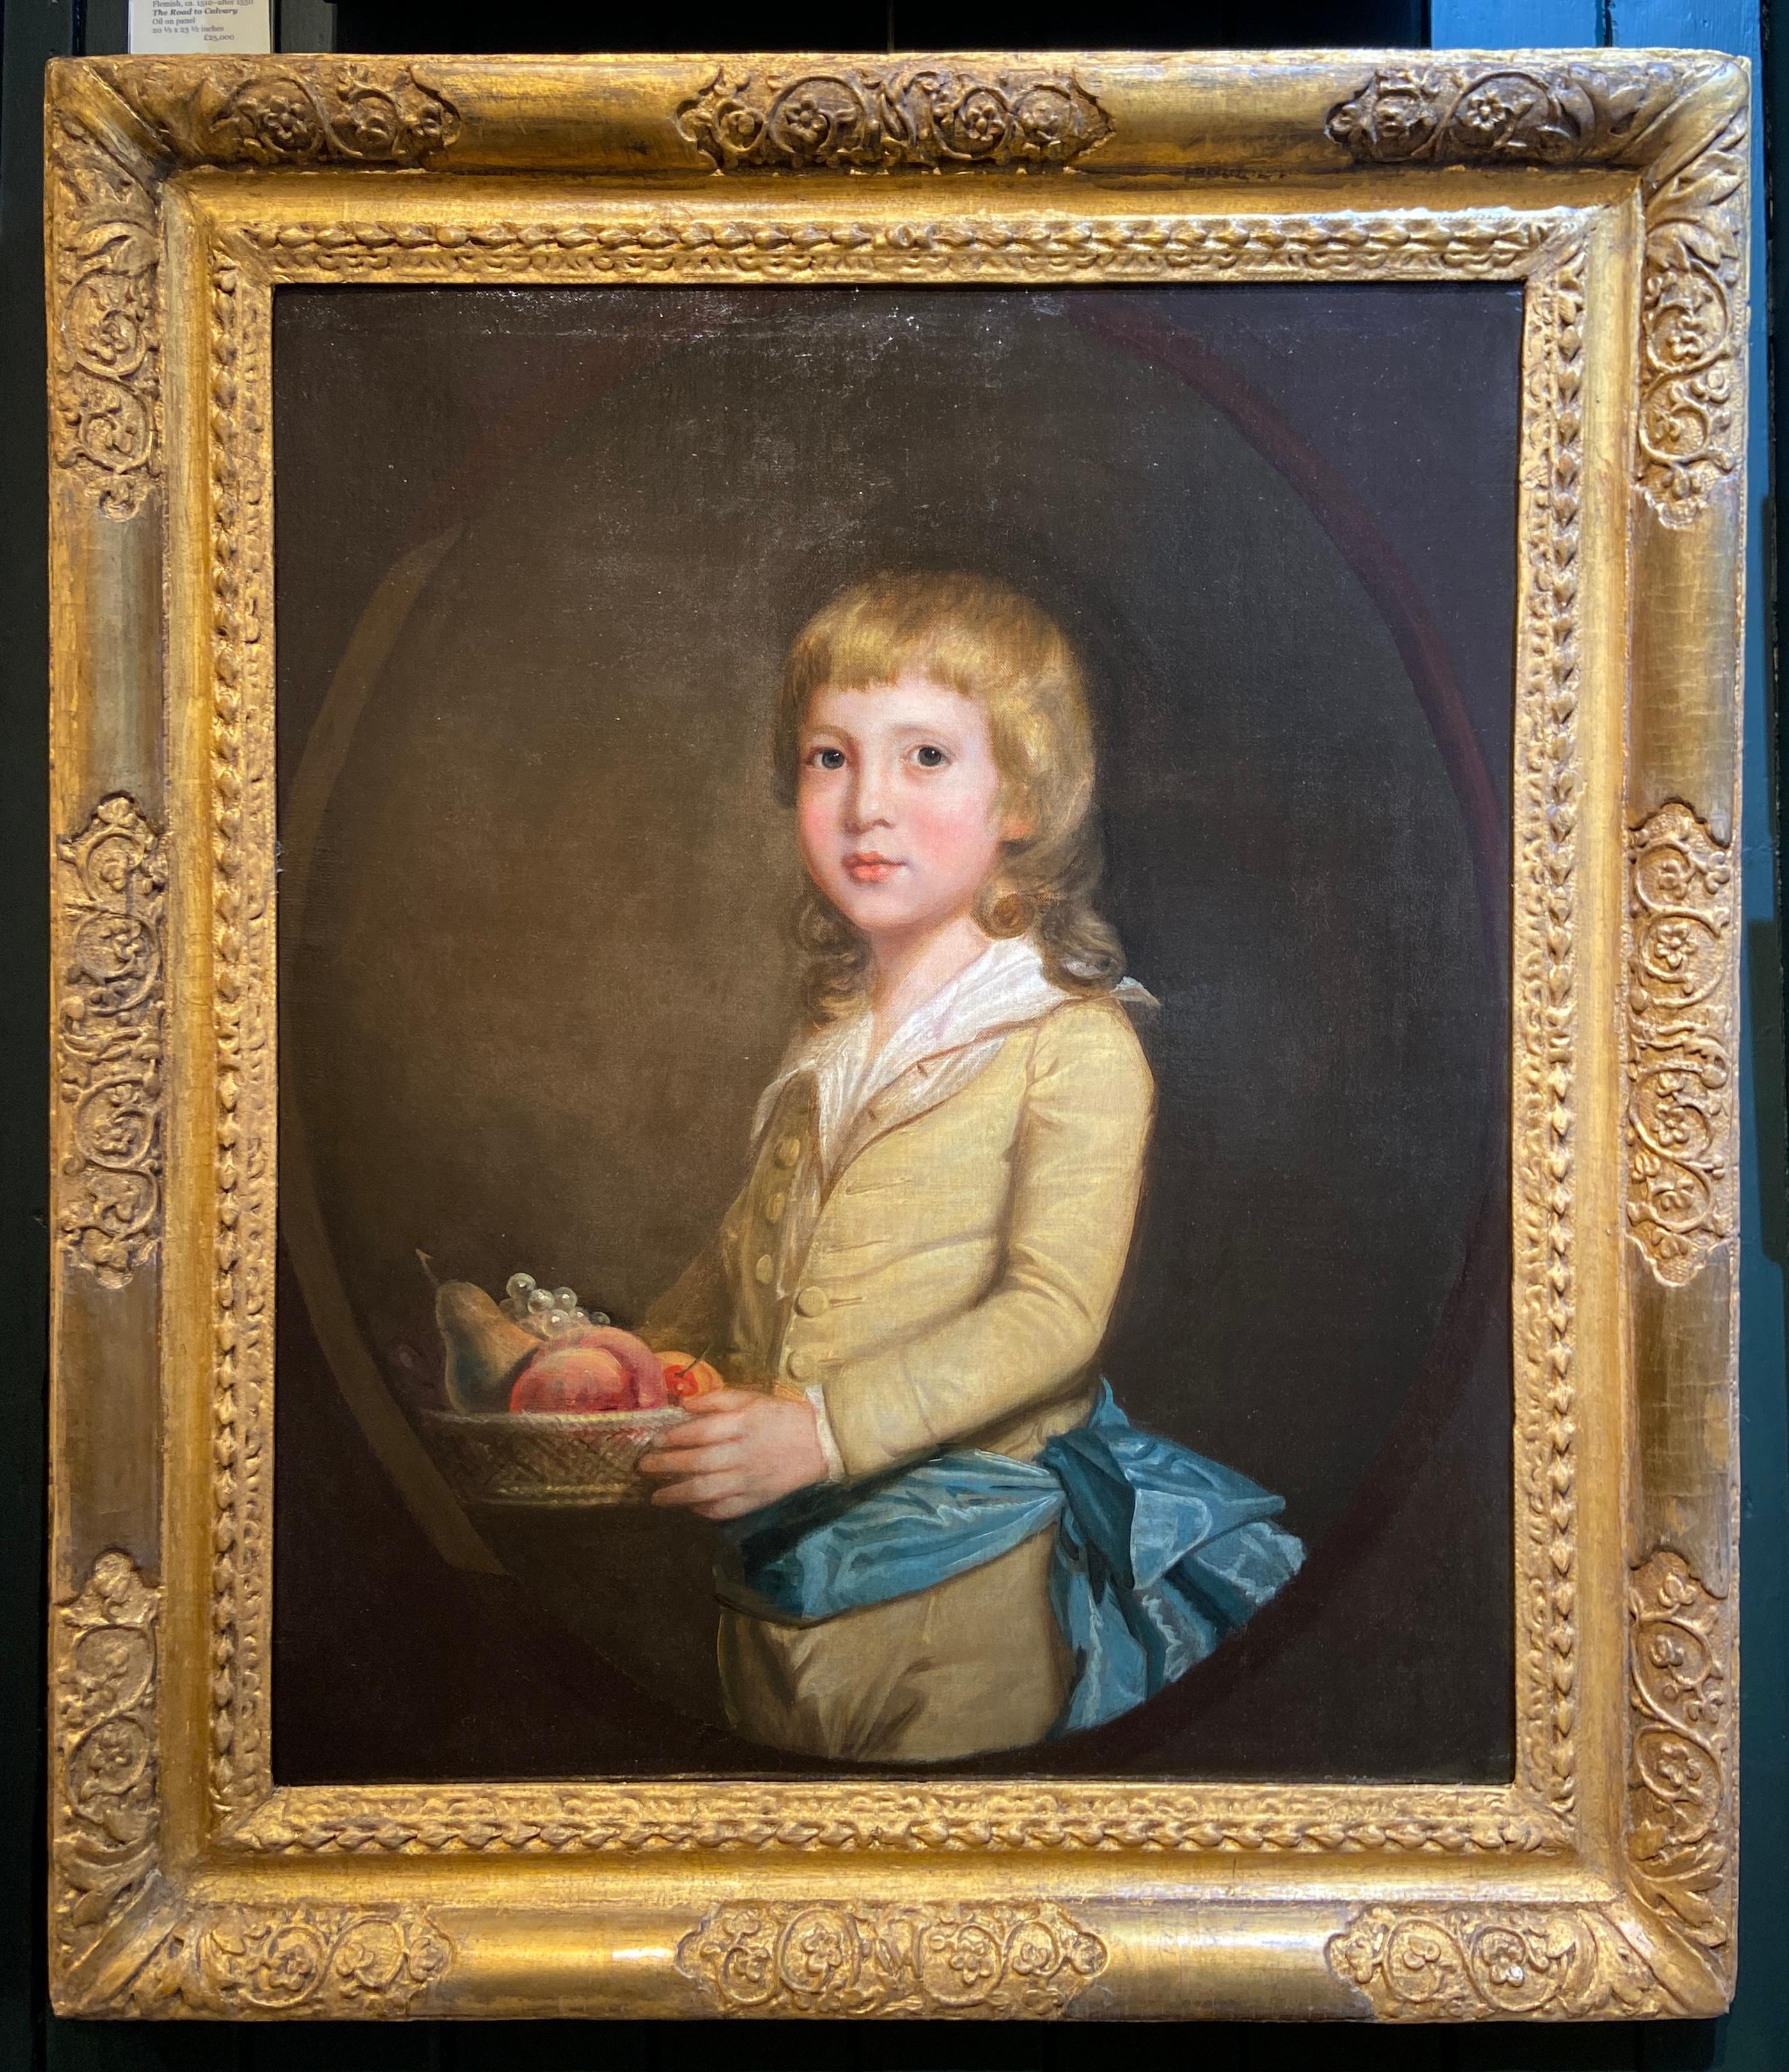 Porträt eines jungen Jungen, der einen Obstkorb trägt, Öl auf Leinwand, 18. Jahrhundert – Painting von Sir William Beechey